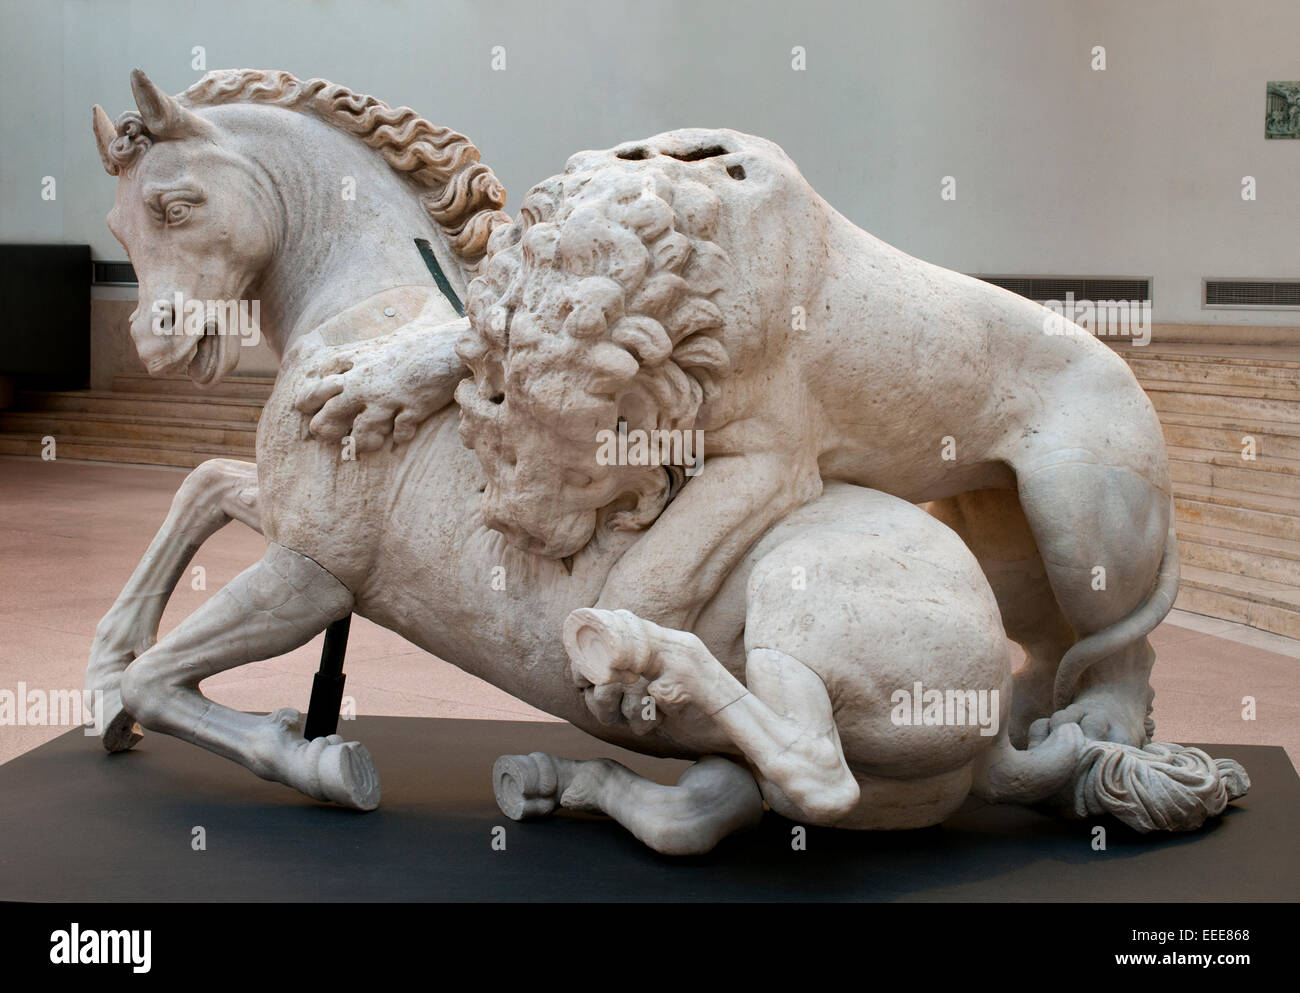 Lion morde la scultura di cavallo gruppo scultoreo di età ellenistica 1594 Ruggero Bascapè, un allievo di Michelangelo, aggiunta la testa, le zampe e la coda del cavallo come pure le zampe posteriori del leone 1,42 m - 2,40 m romano Roma Museo Capitolino Italia Italiano Foto Stock